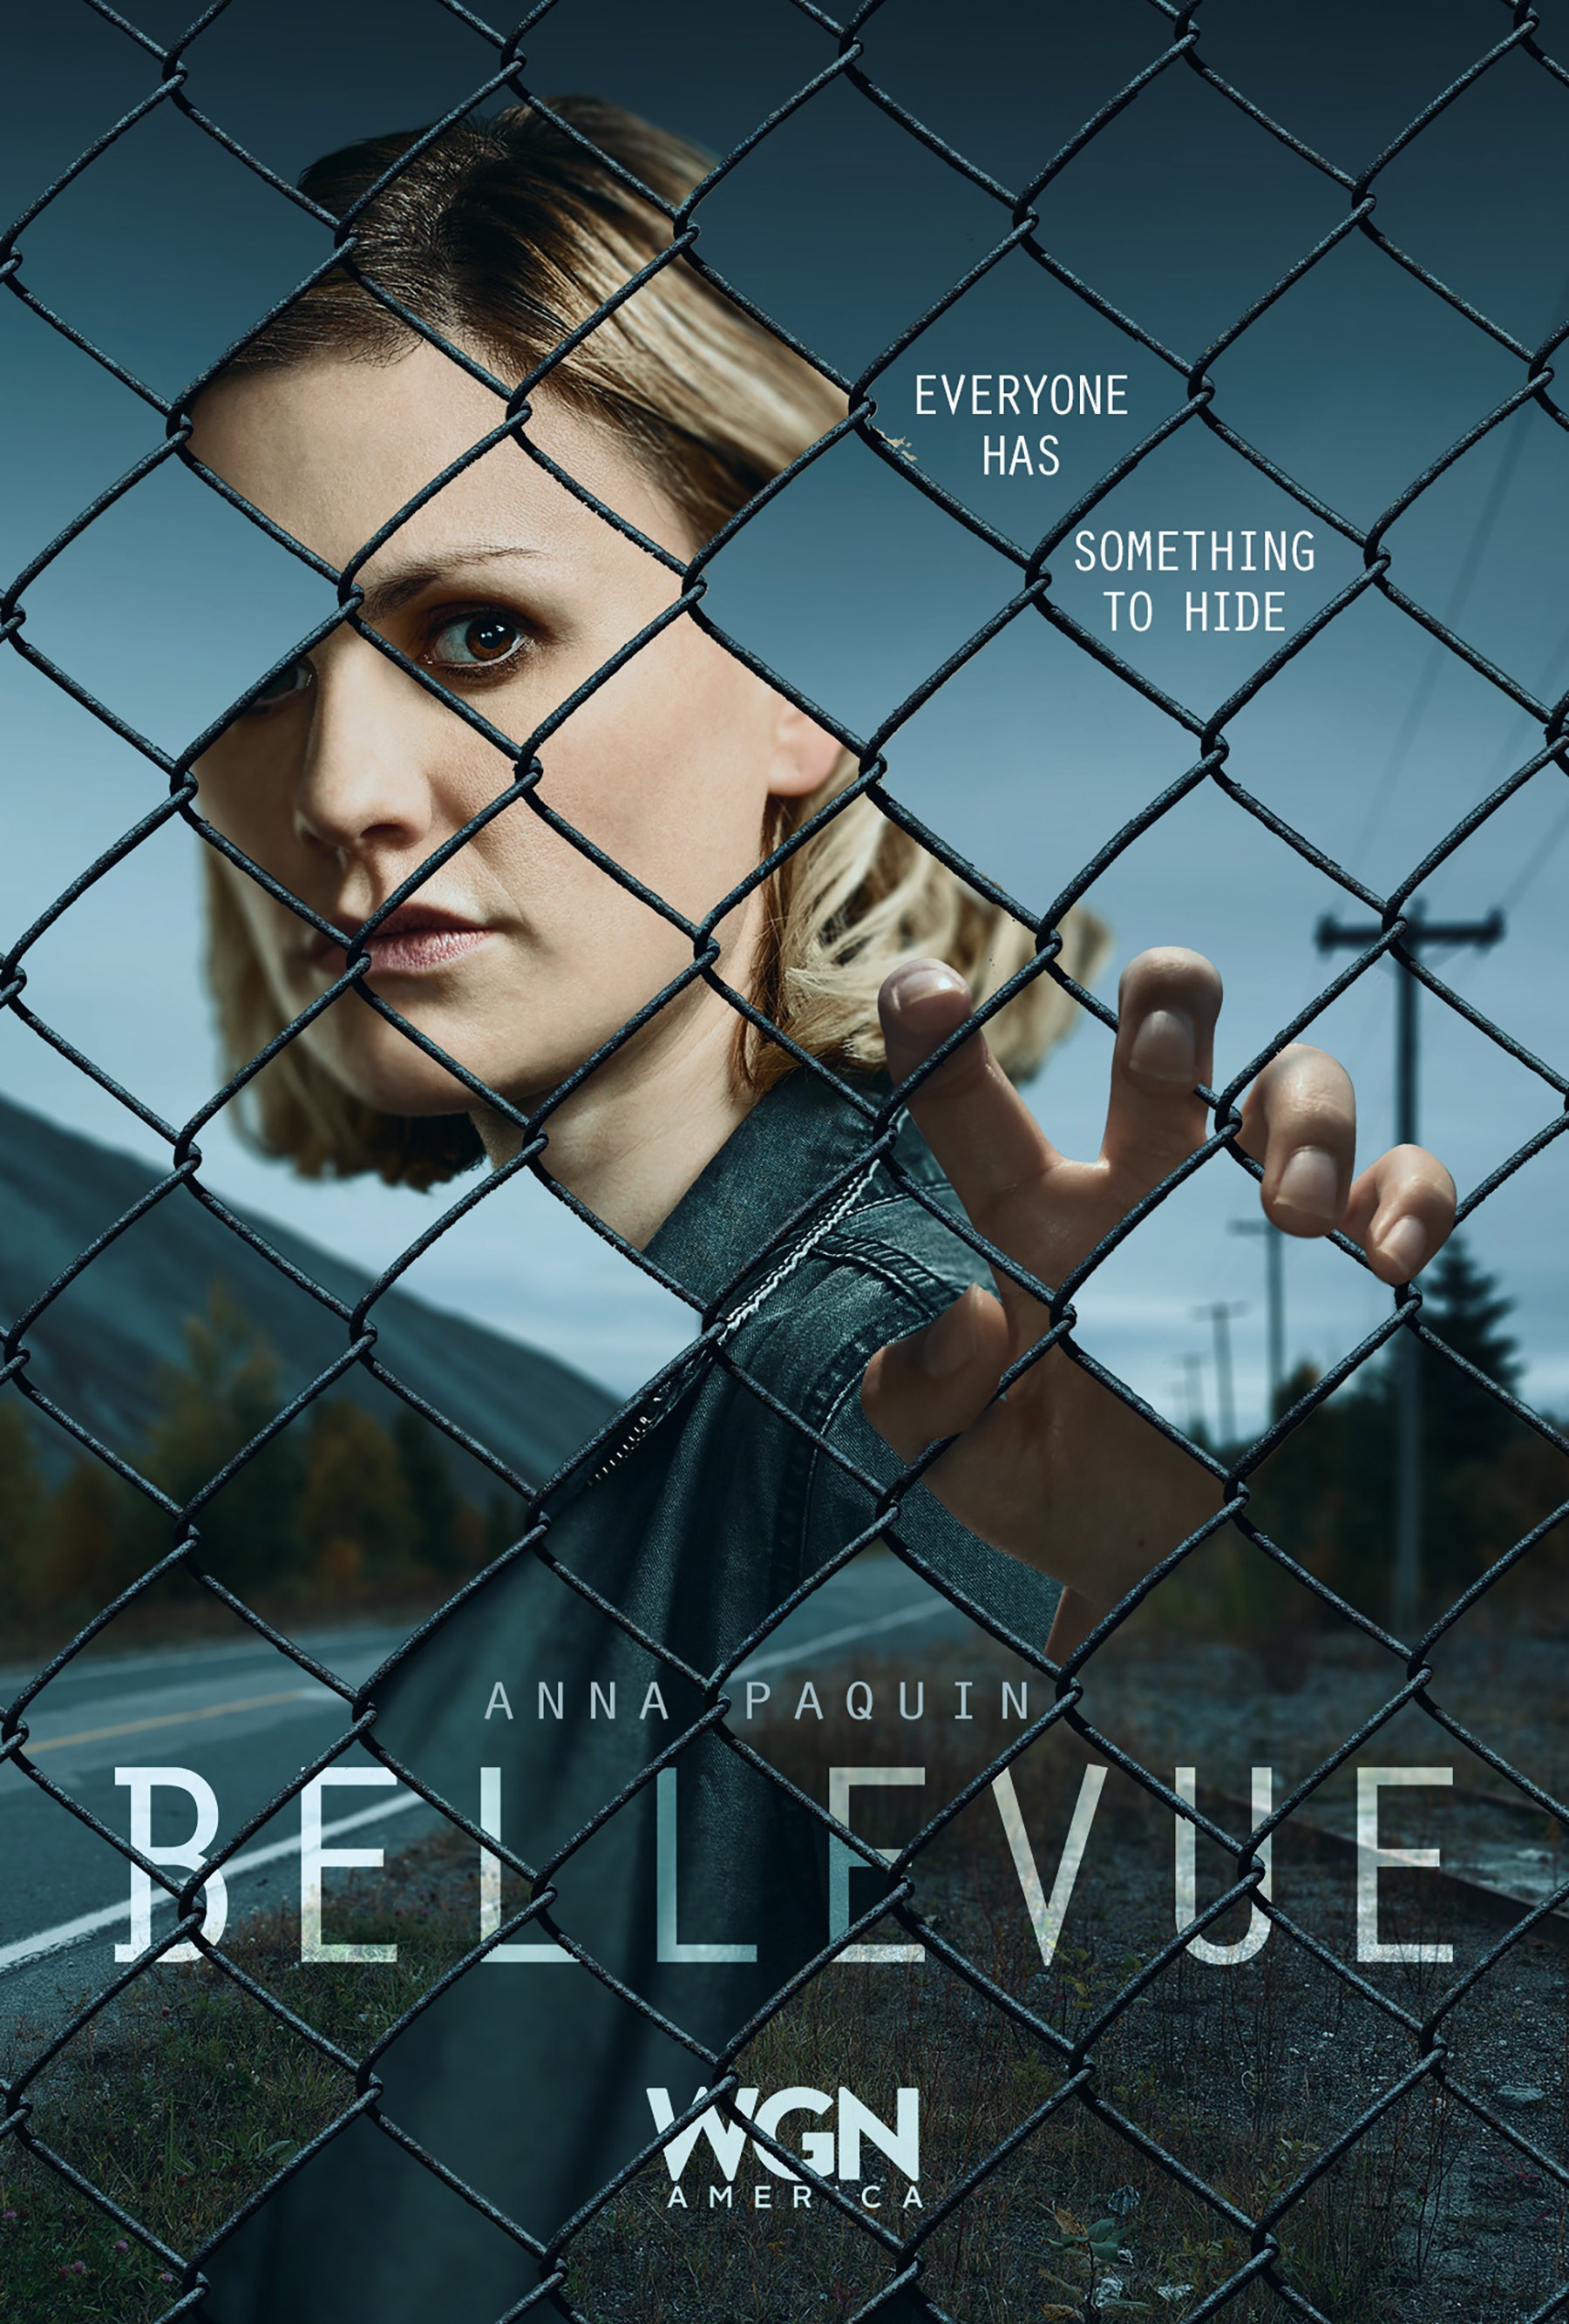 Mega Sized TV Poster Image for Bellevue (#4 of 4)